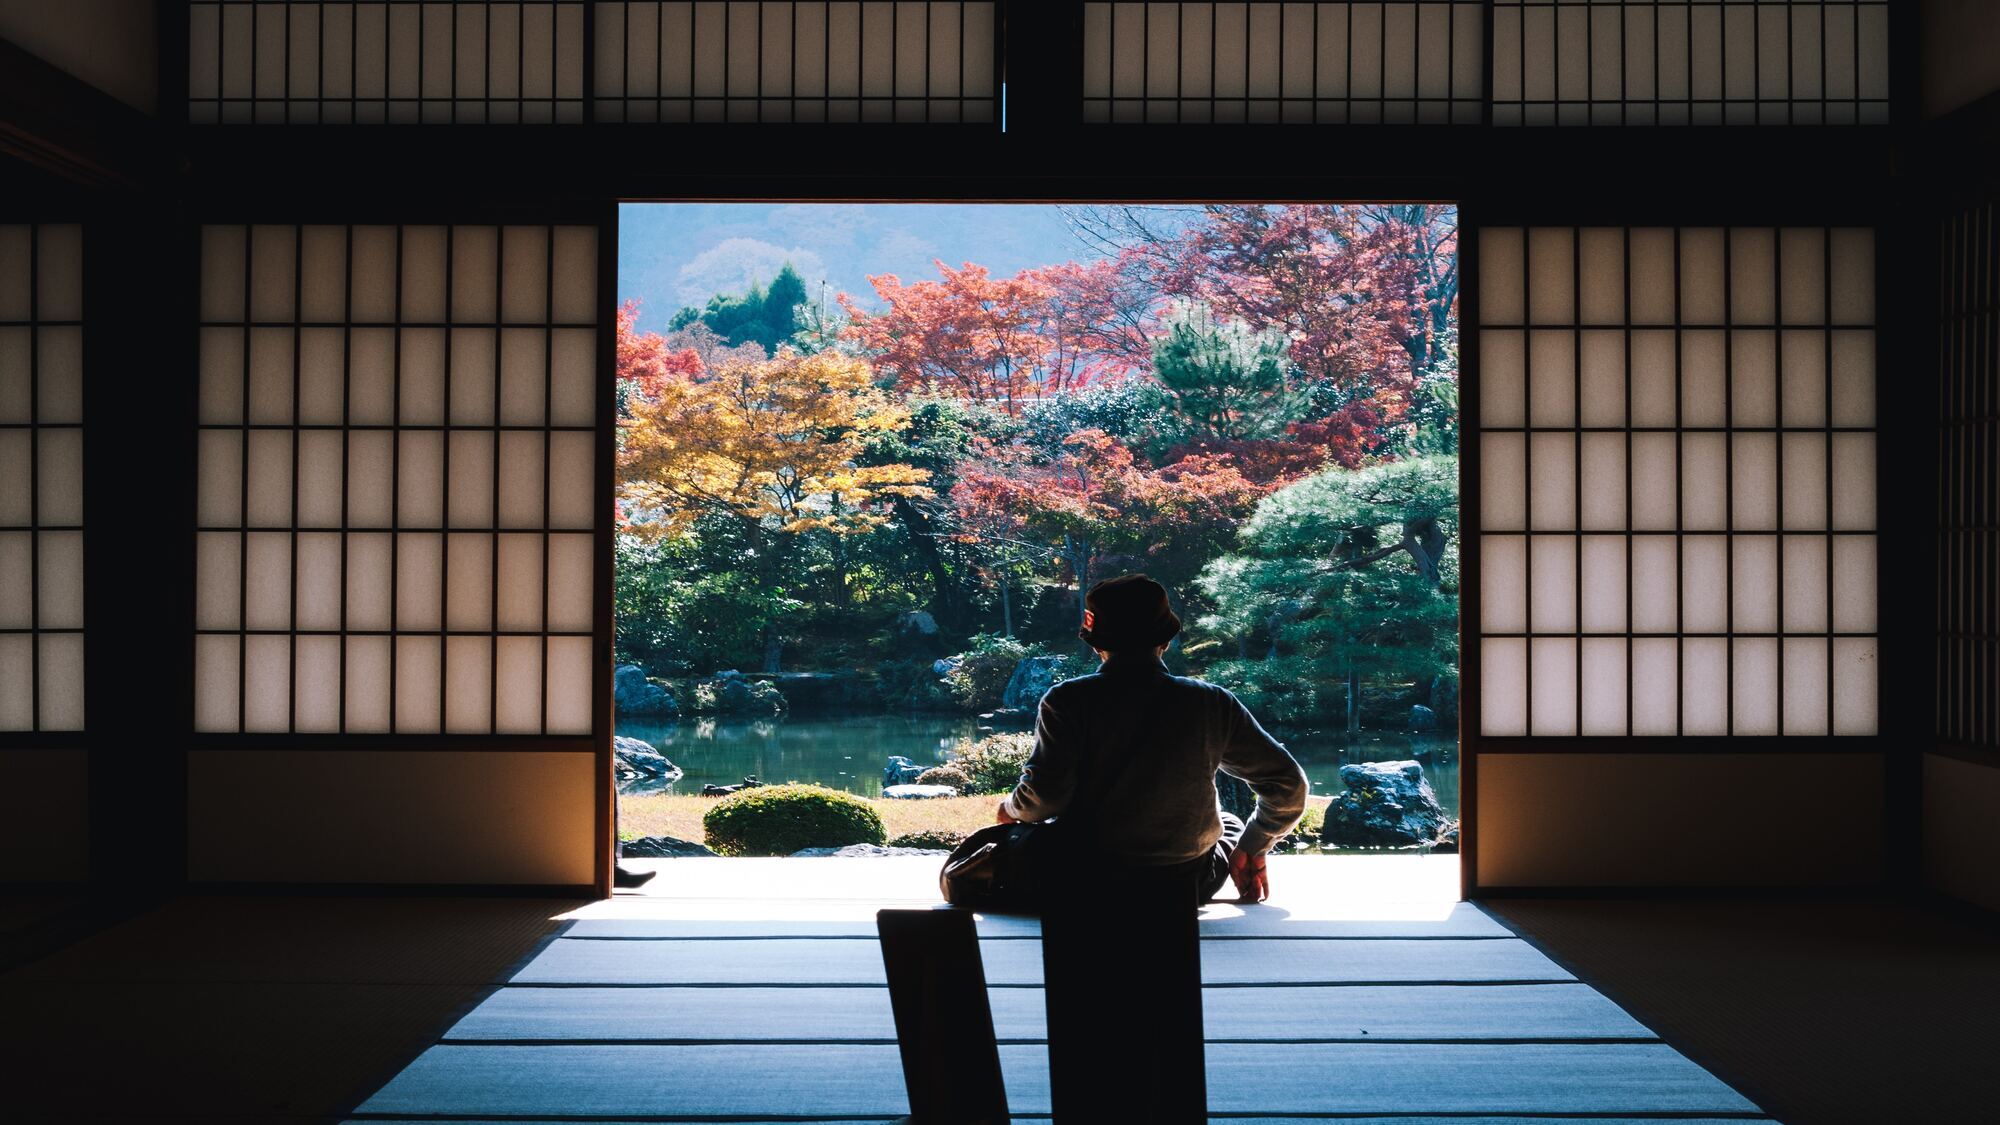 【京都・天龍寺】壮大な庭園風景が楽しめる紅葉人気スポットです。